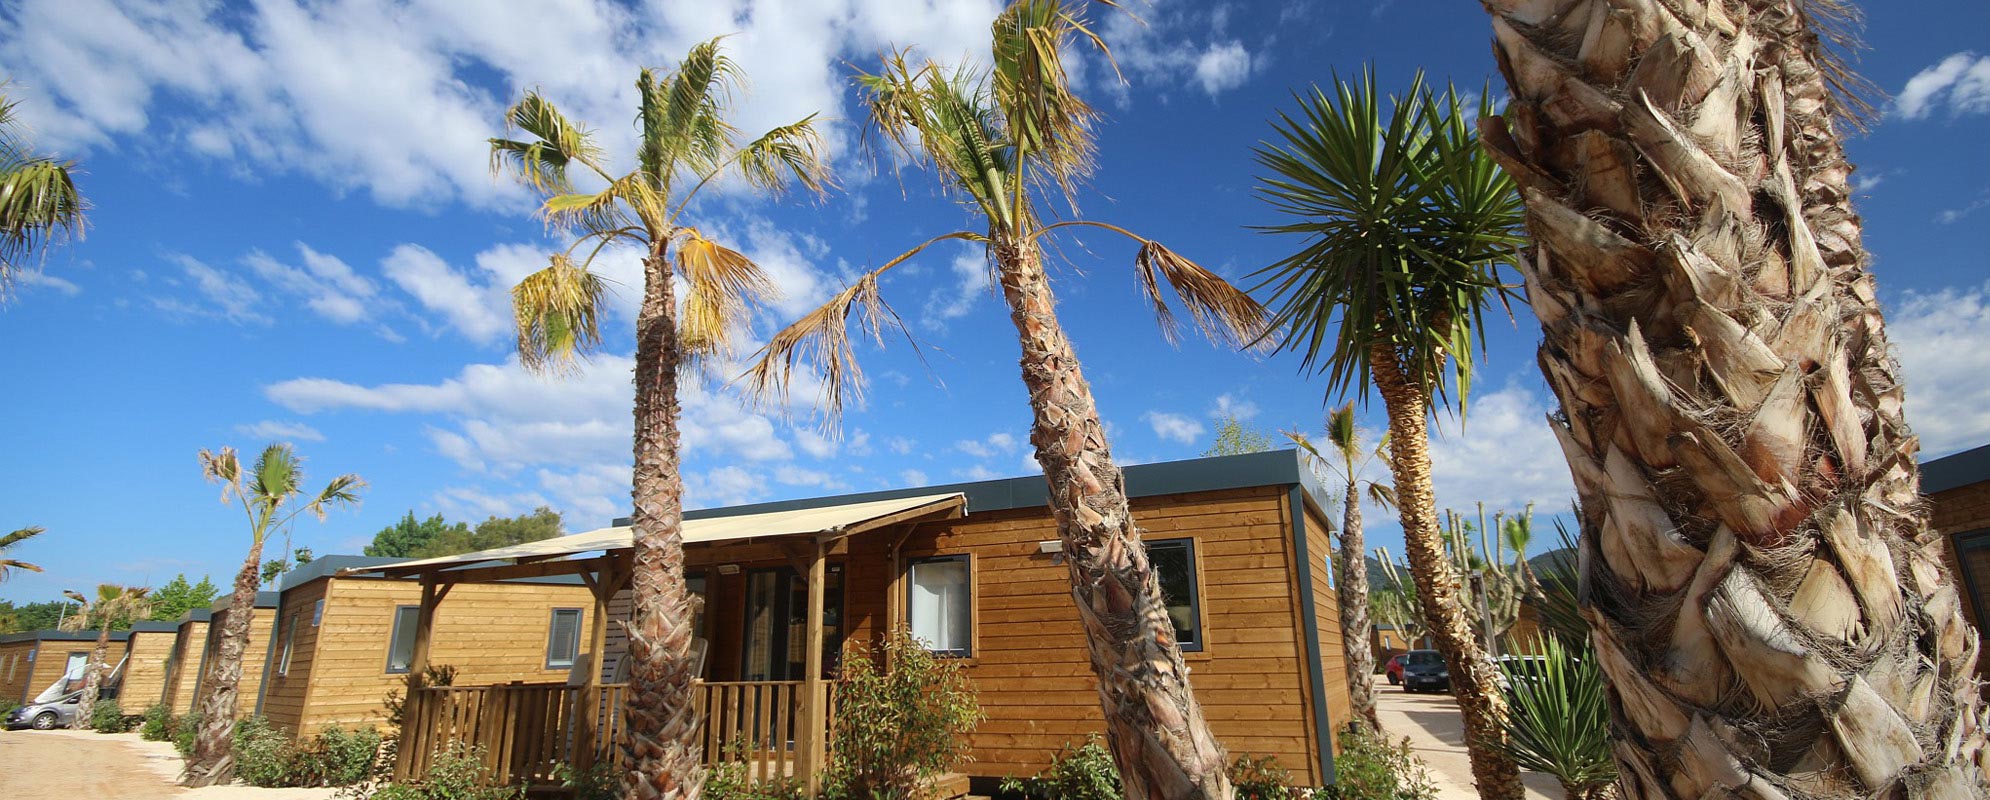 palmiers devant mobil-home Marvilla en bois sous le ciel bleu